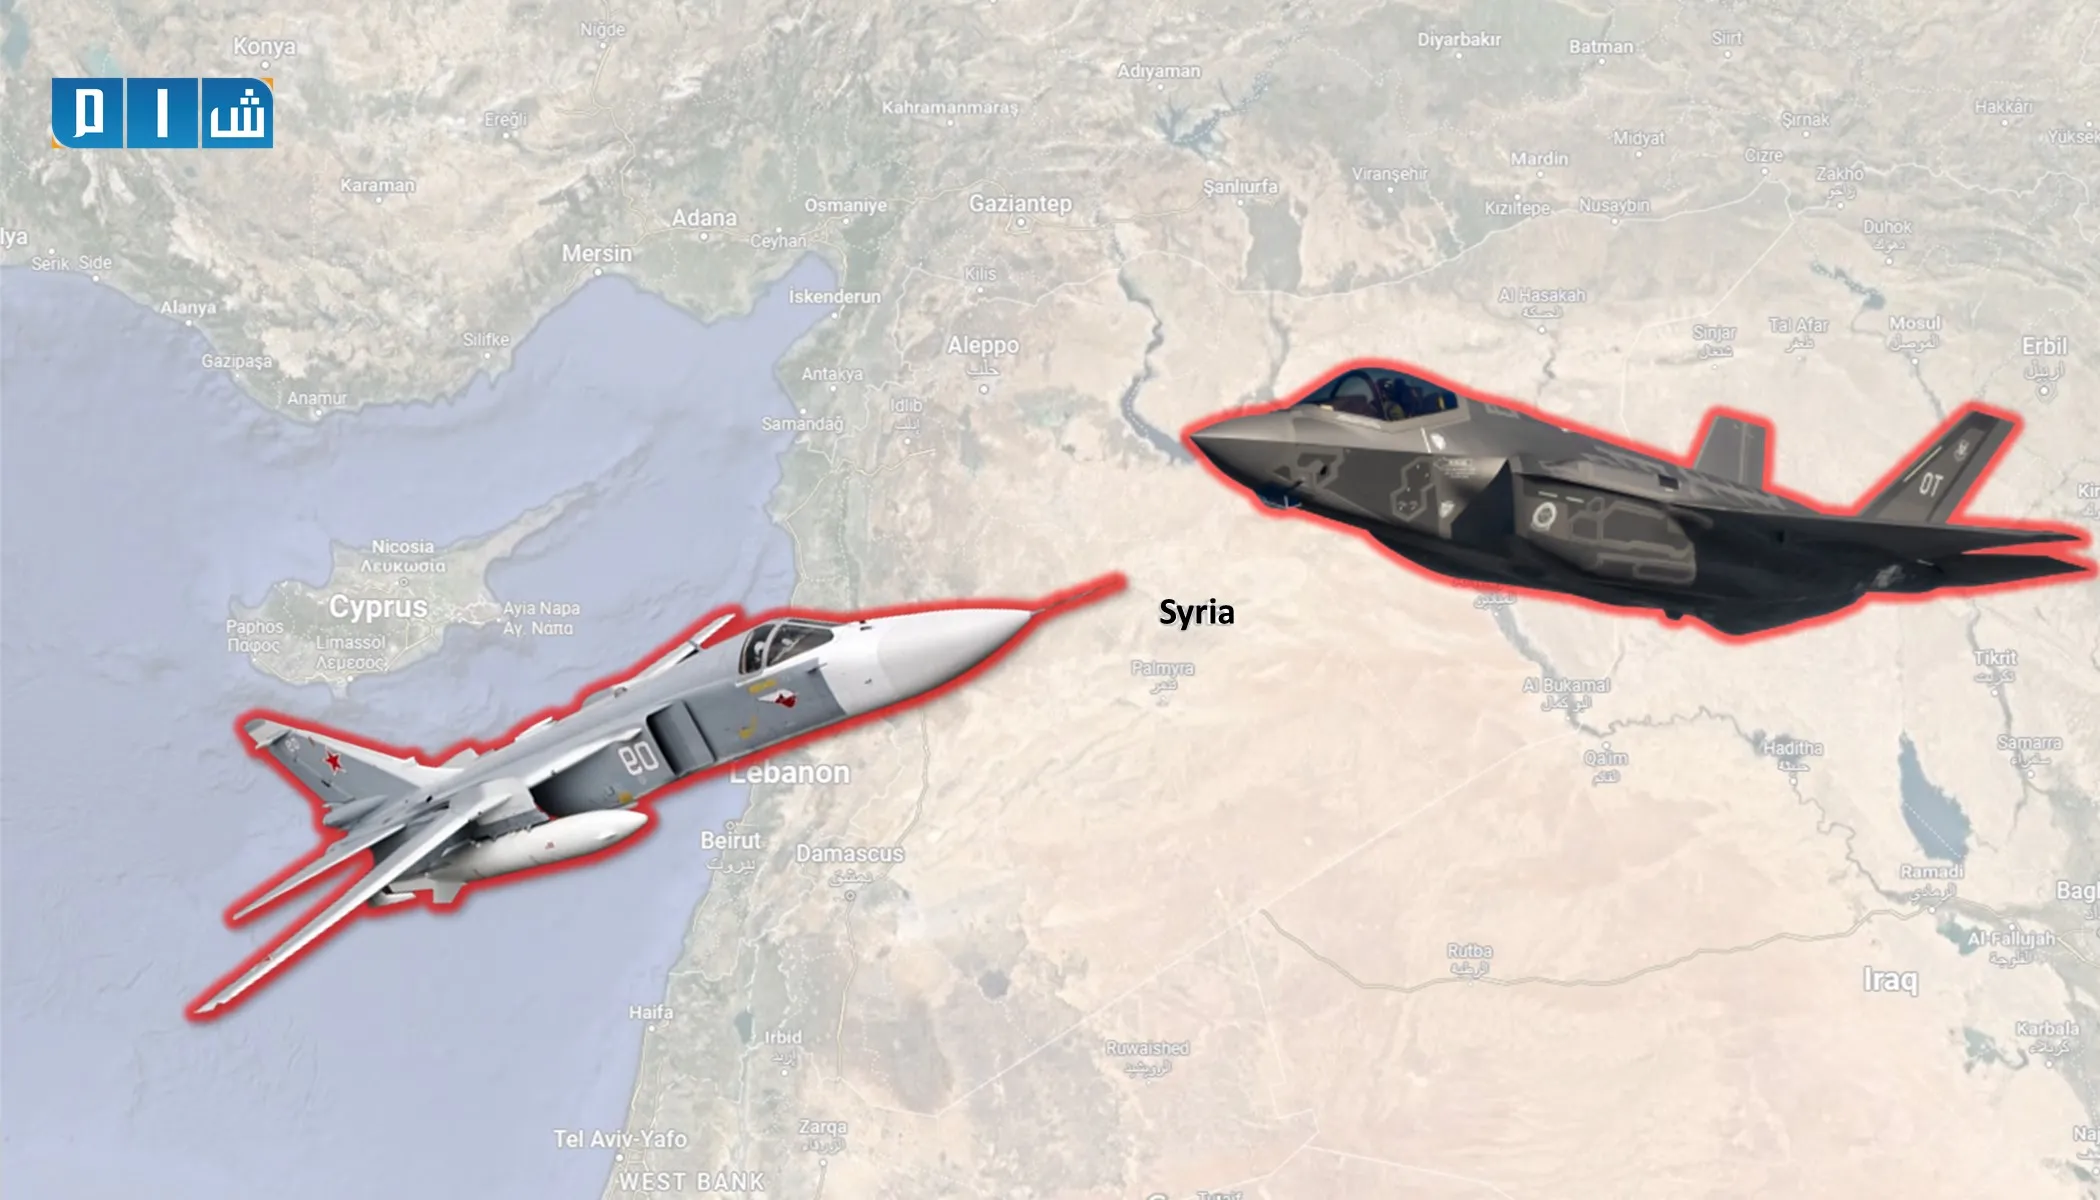 "وول ستريت جورنال": التوترات بين روسيا وواشنطن في سوريا يمكن أن تتحول لـ "ساحة صراع"